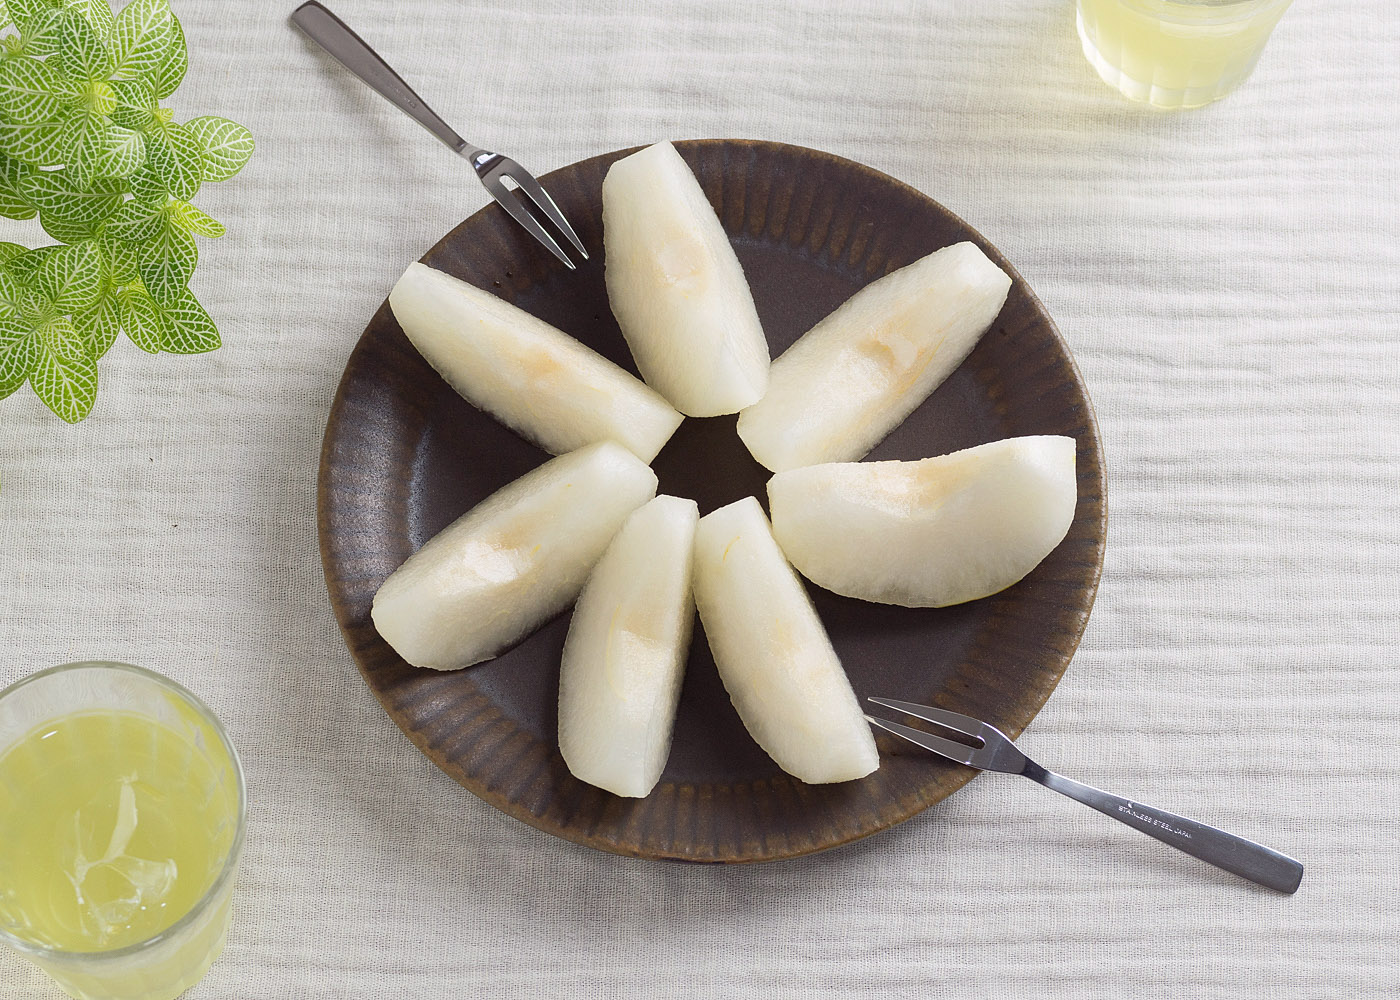 真っ白な梨と焦げ茶色のラッフルプレートのコントラスト